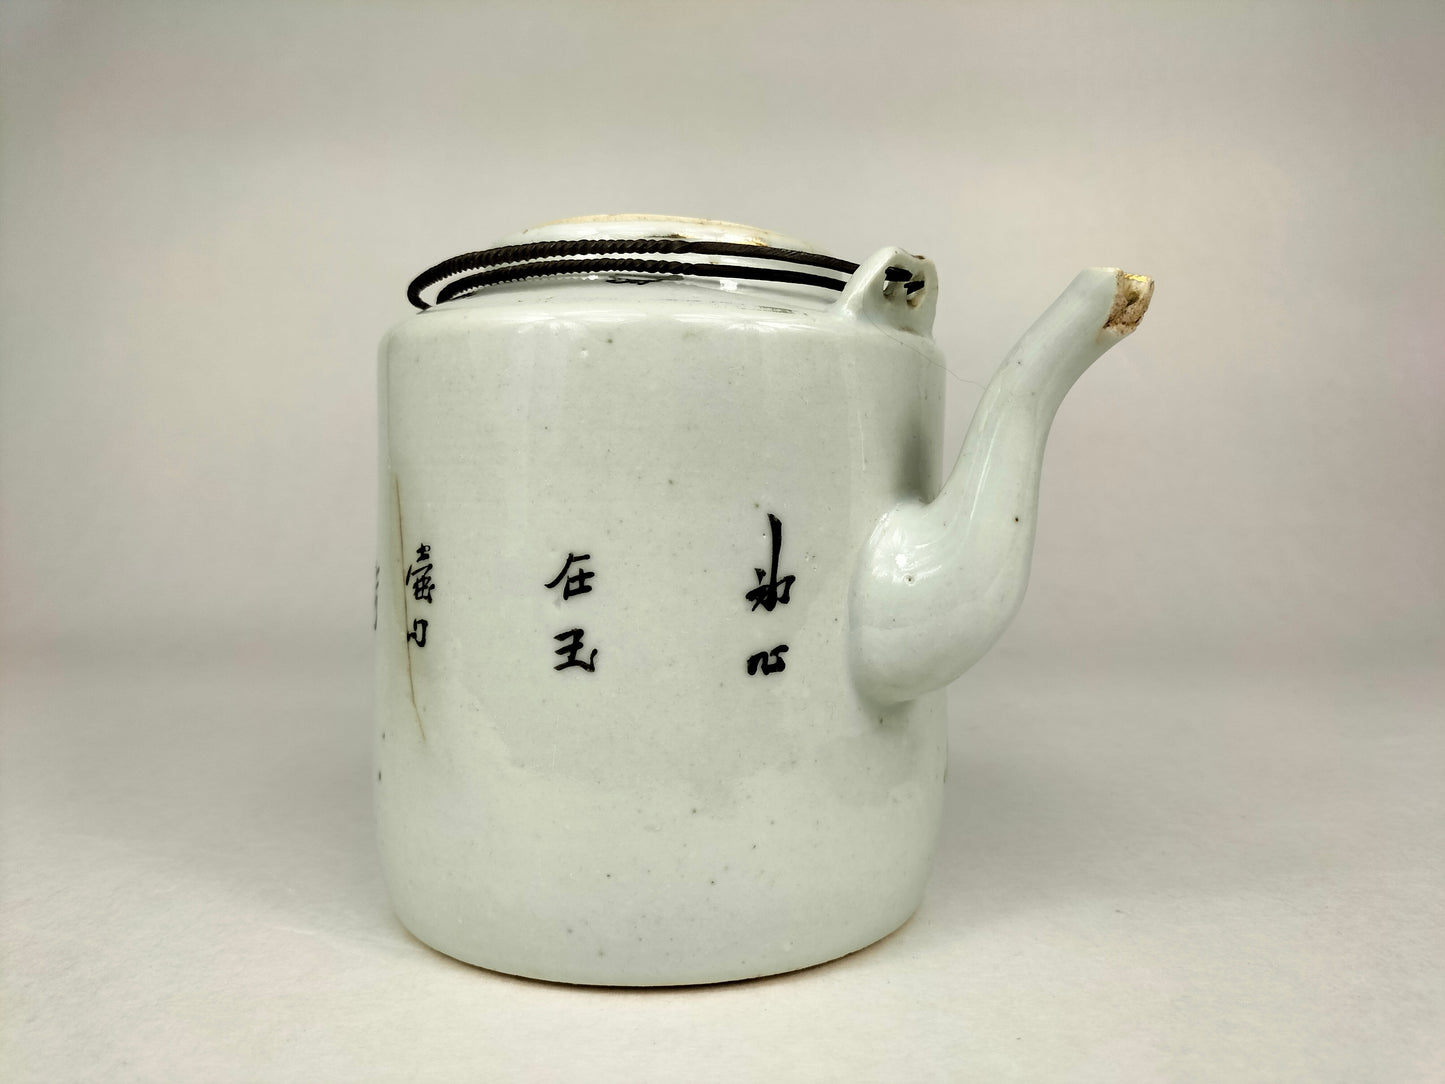 Ấm trà cổ Trung Quốc được trang trí bằng các hình vẽ // Thời kỳ Cộng hòa (1912-1949)